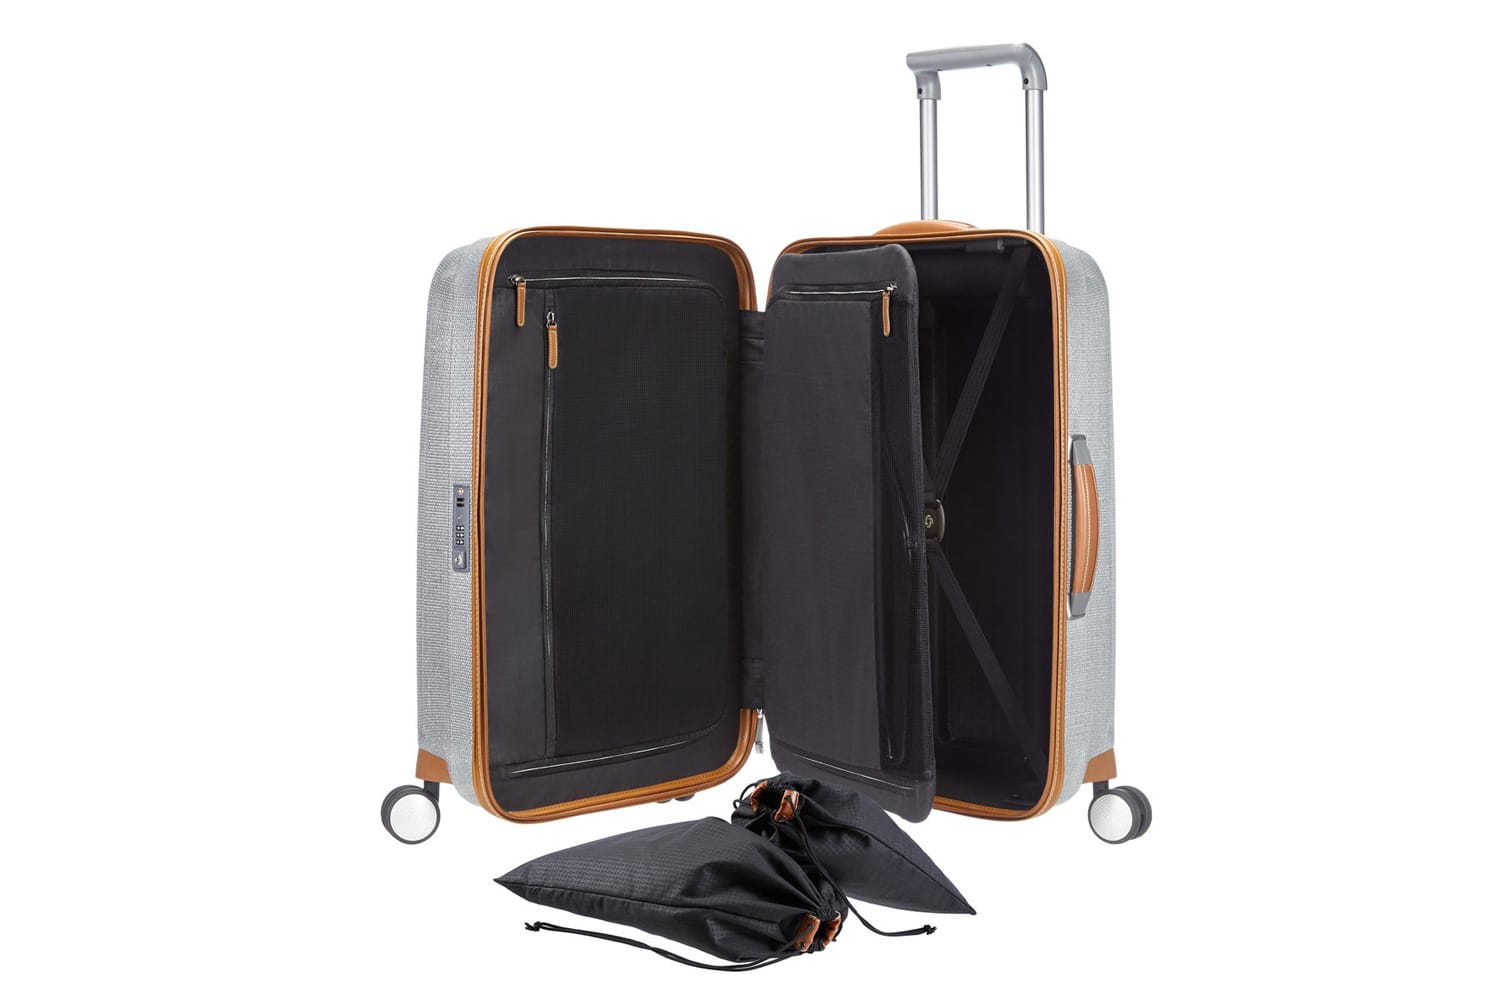 Ein Ausgeklügeltes Innenleben wie bei den Koffern von Samsonite (um 400 Euro) garantiert Ihnen und Ihrem Gepäck eine sichere Reise.